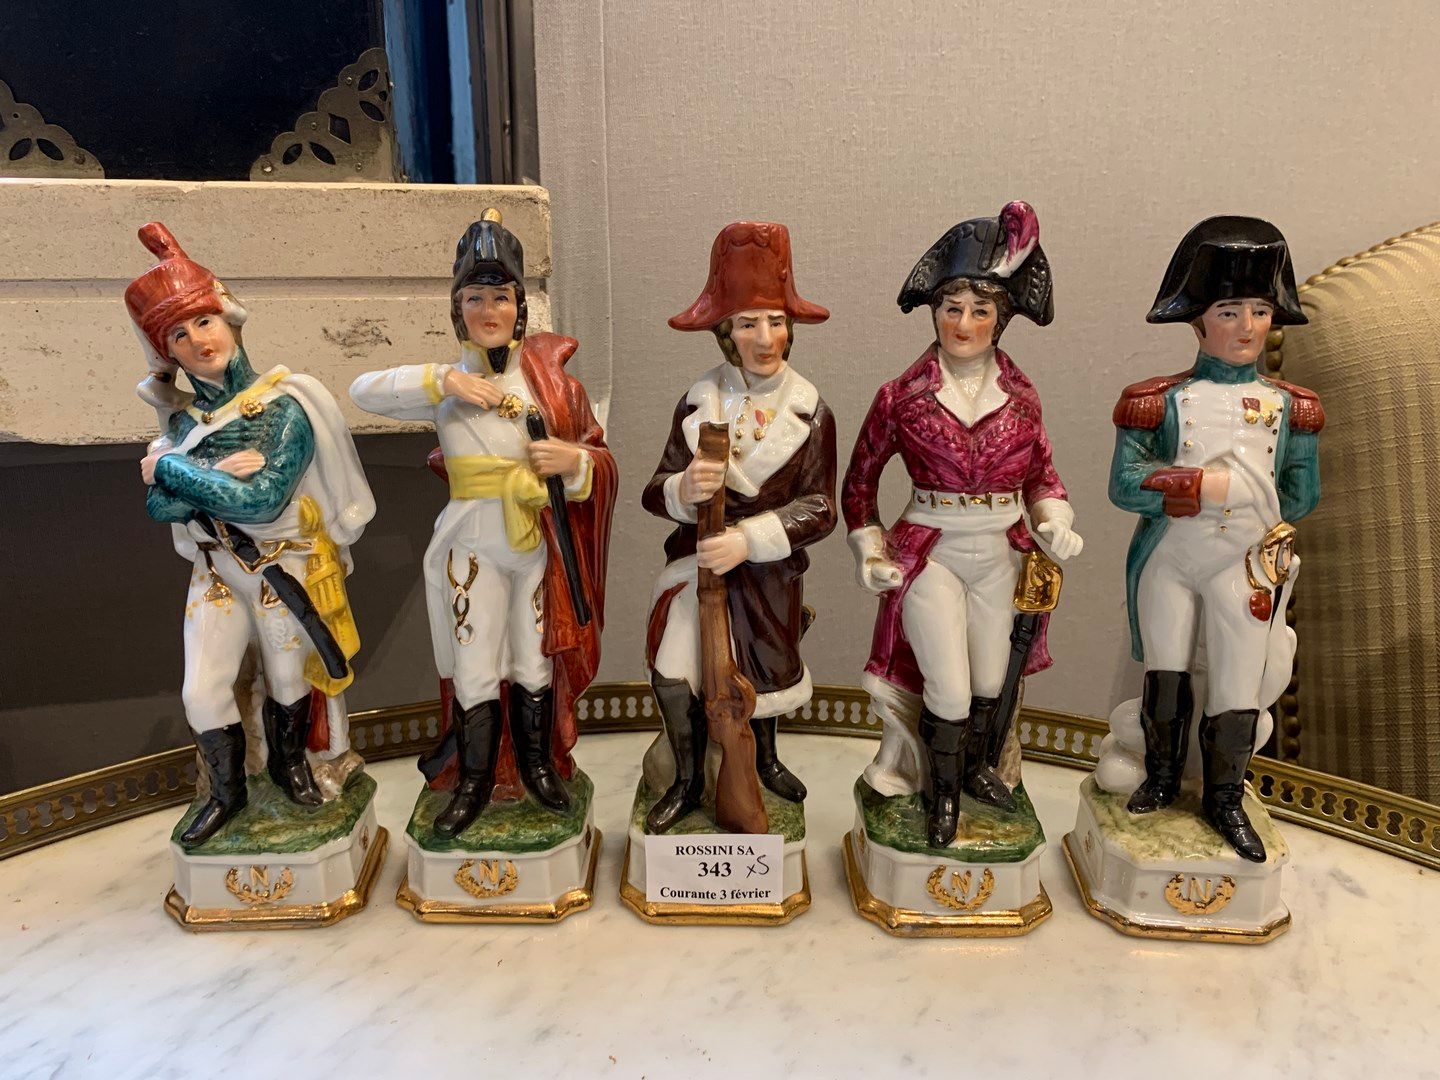 Null Fünf Porzellanstatuetten, die Napoleon und seine Generäle darstellen. 

Ein&hellip;